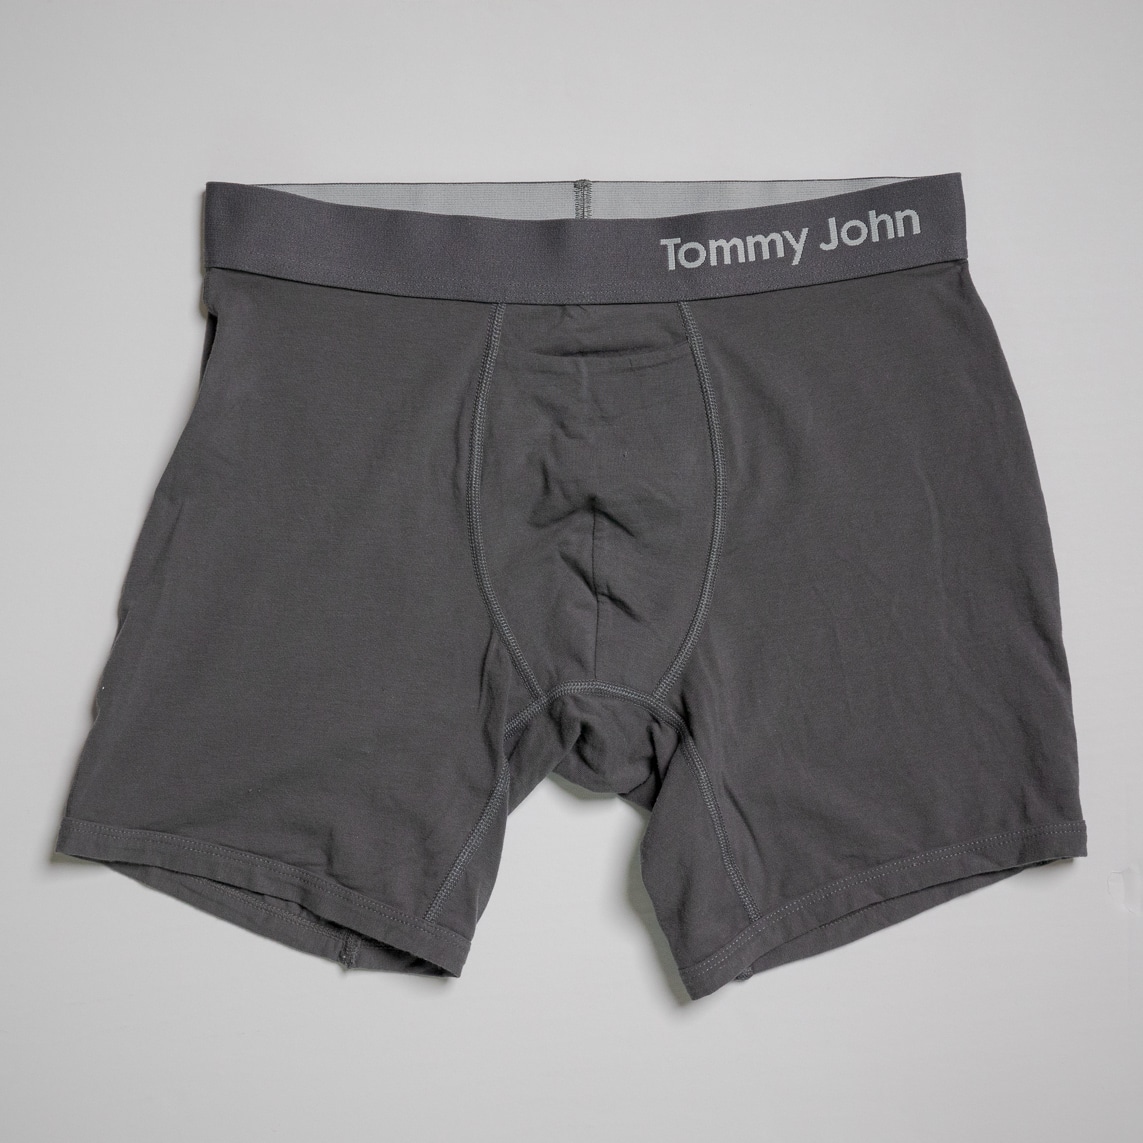 Tommy John Cool Cotton Boxer Briefs - Mens